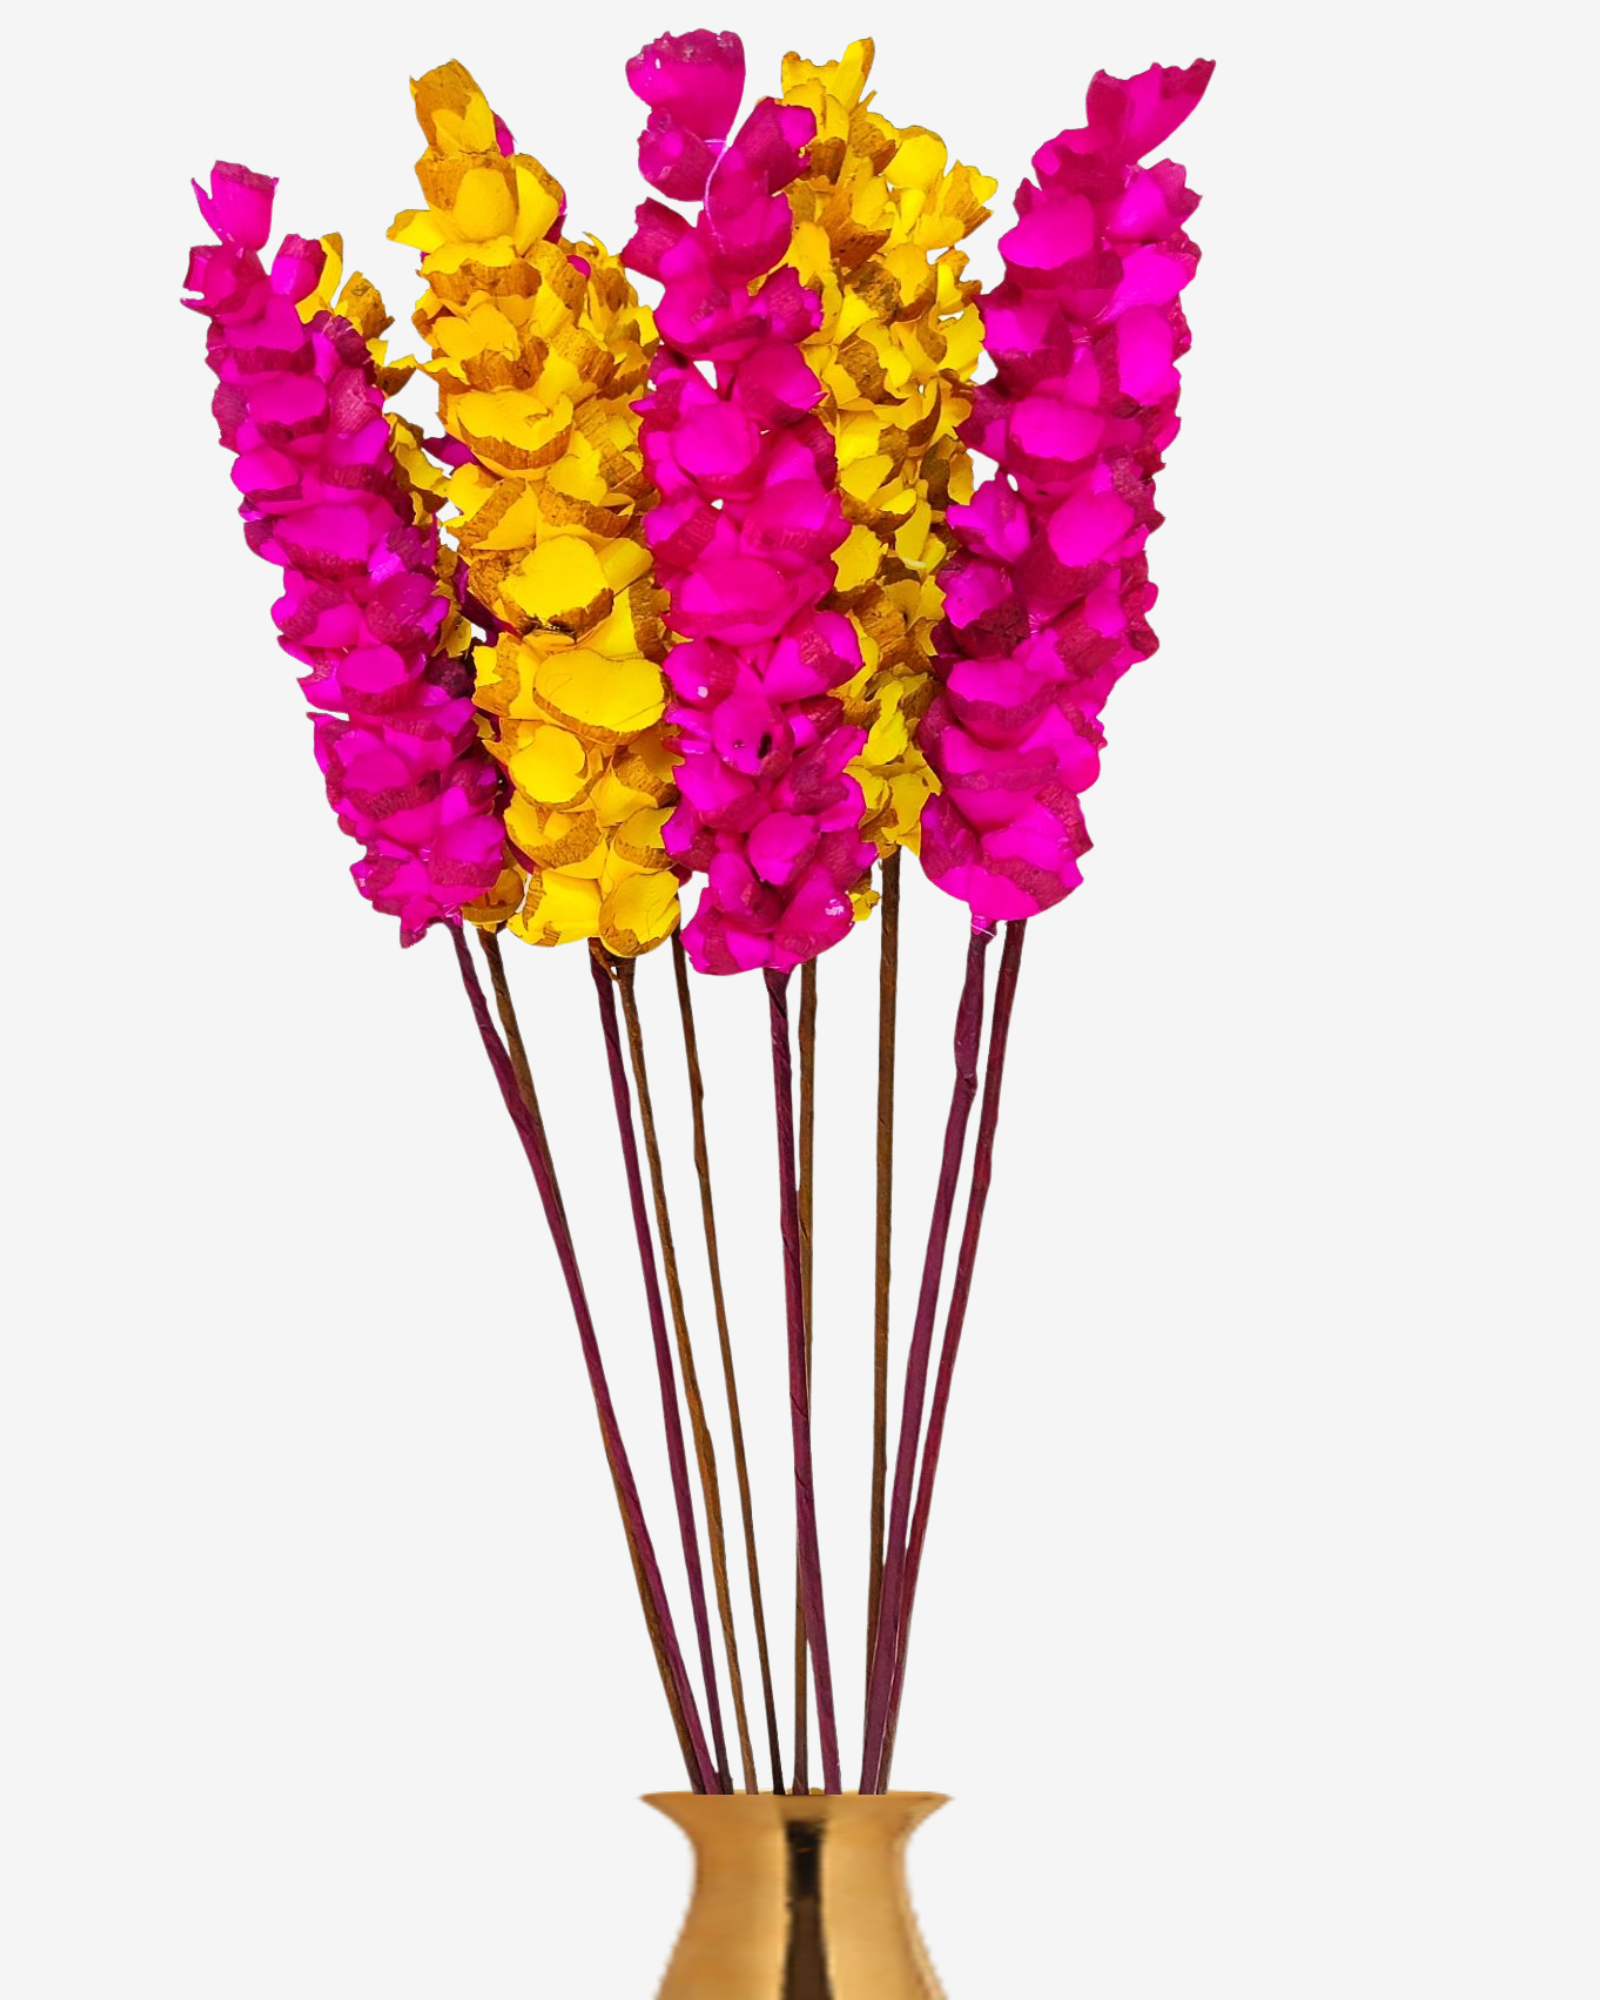 Handmade Sola Makka Stick Joynagar Handicraft Artificial Flowers Homemade color_random